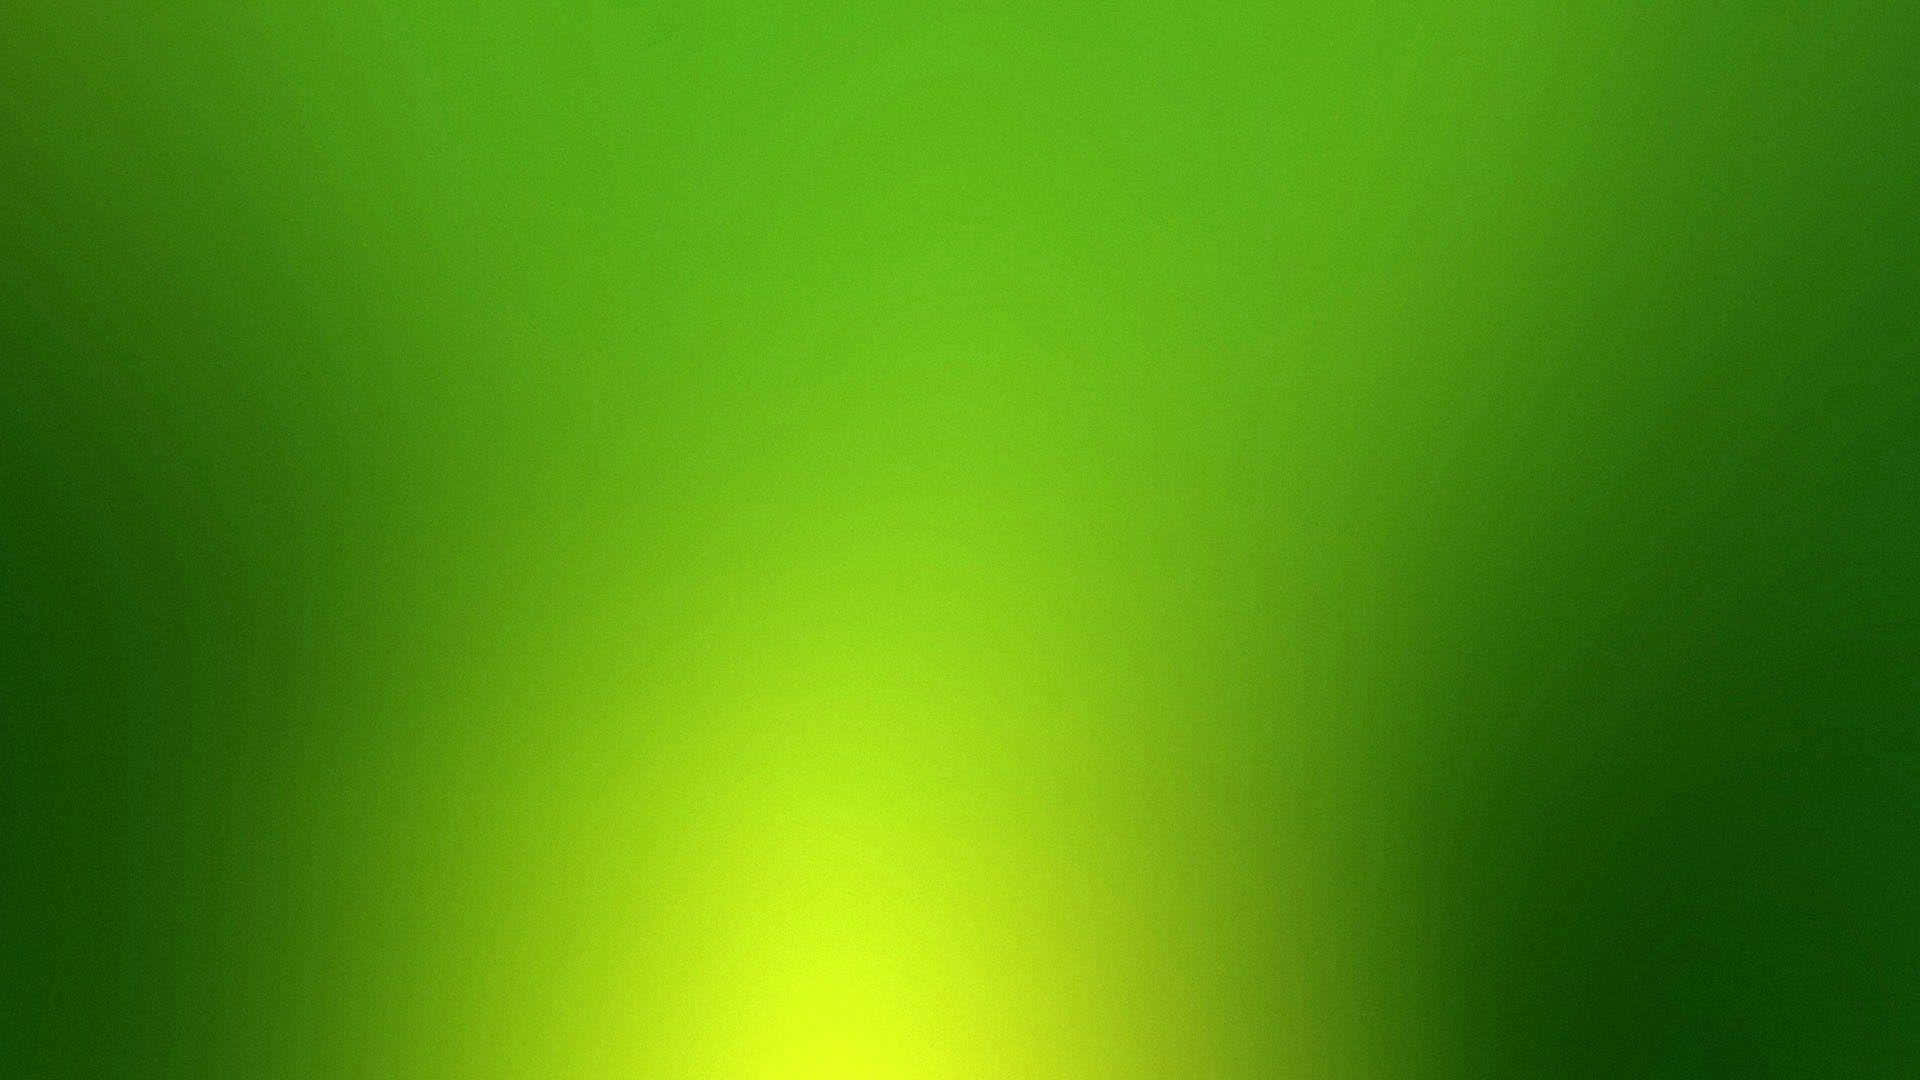 Enmörk Och Stämningsfull Enfärgad Grön Bakgrund.